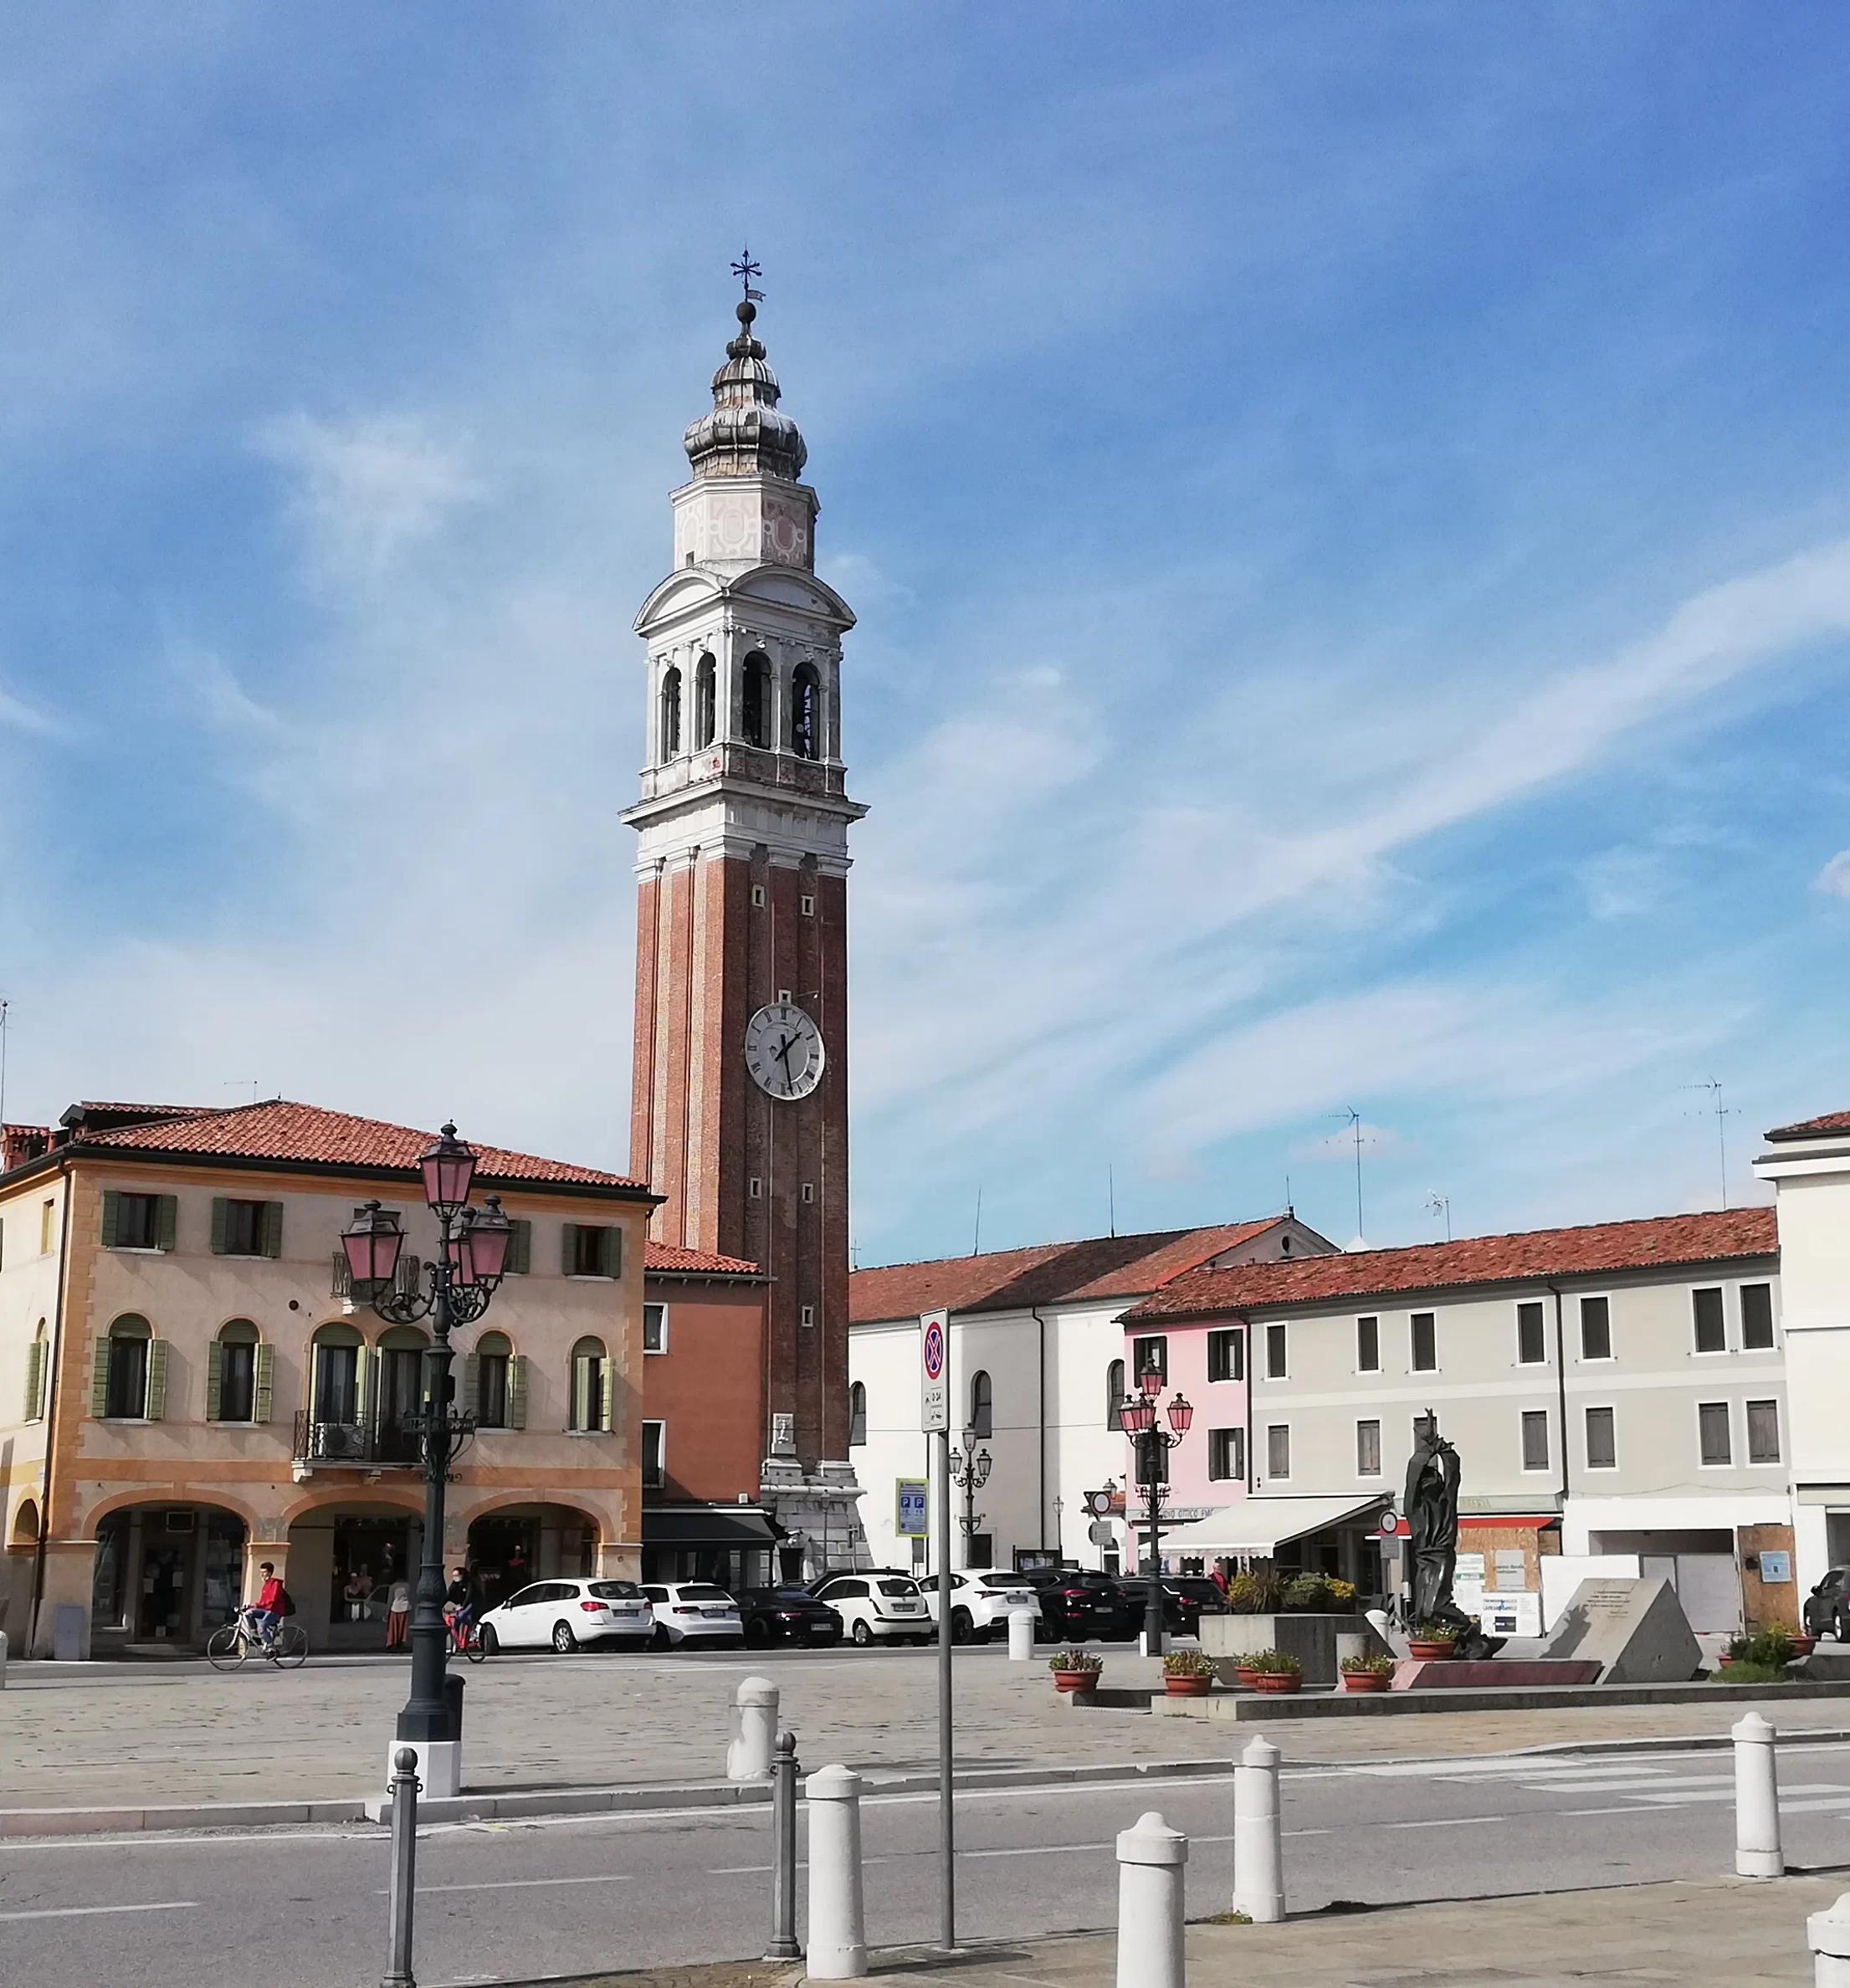 Piazza principale di Mirano con torre con orologio